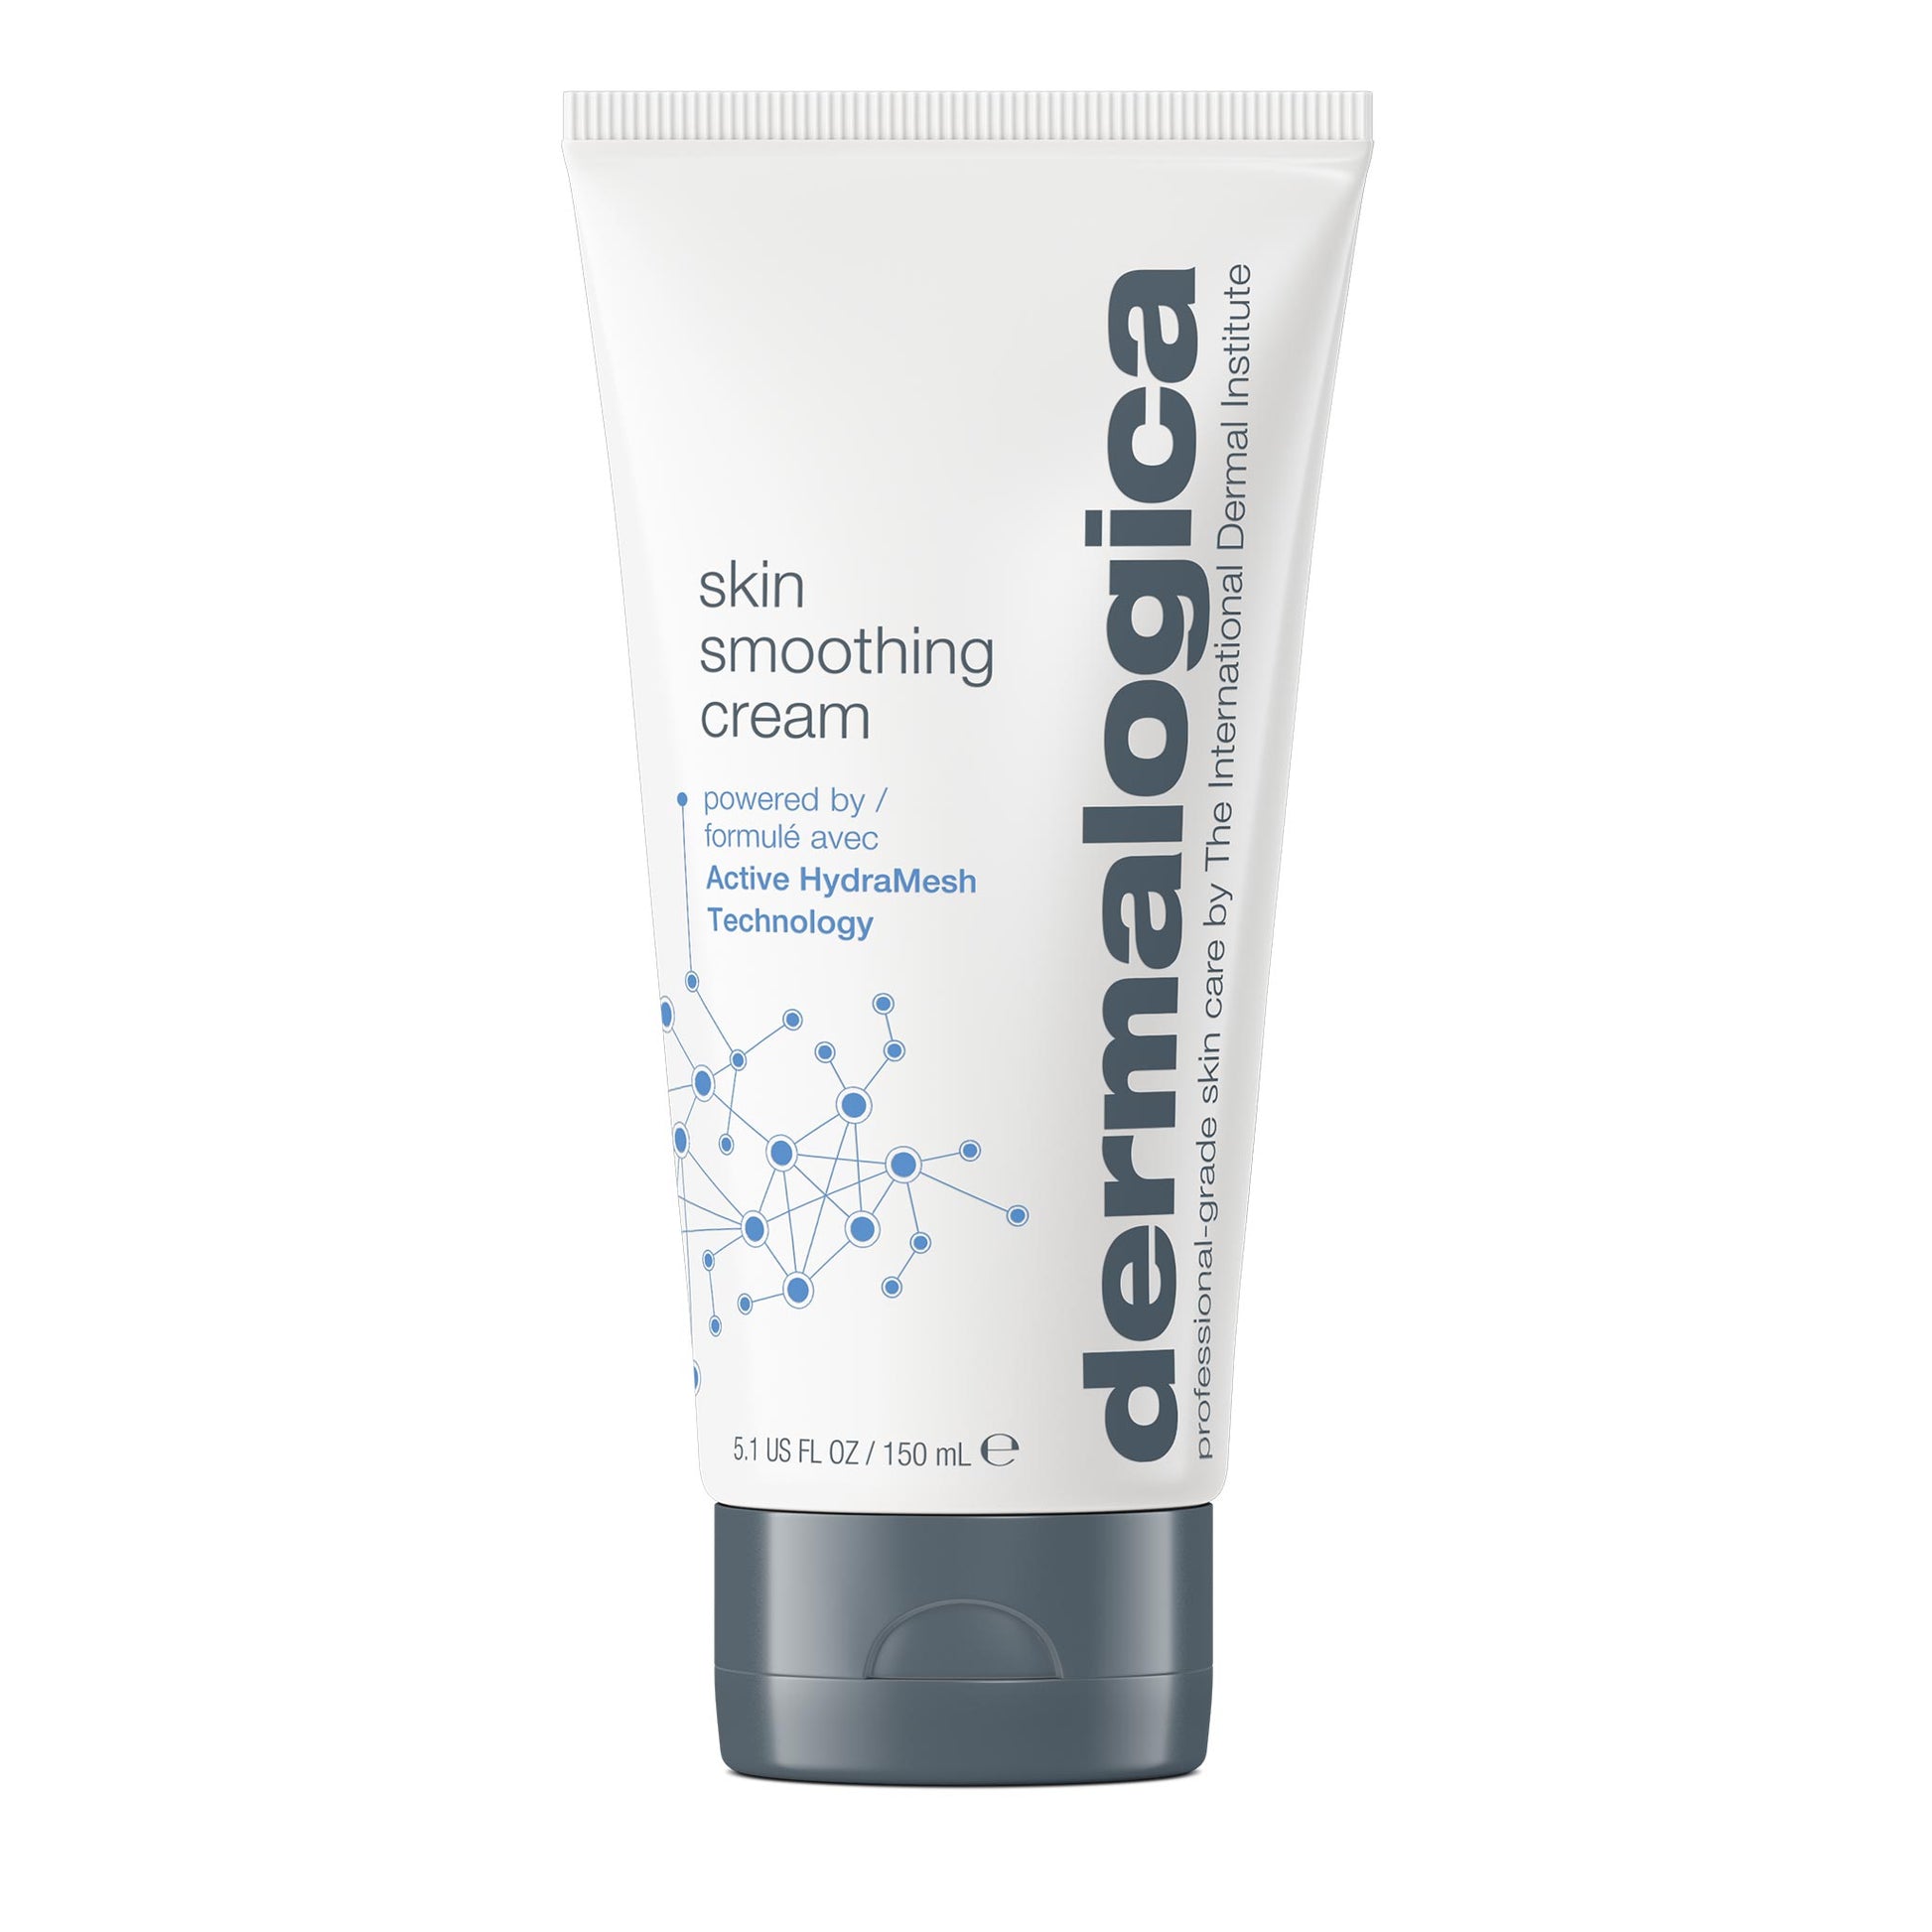 skin smoothing cream 5.1oz